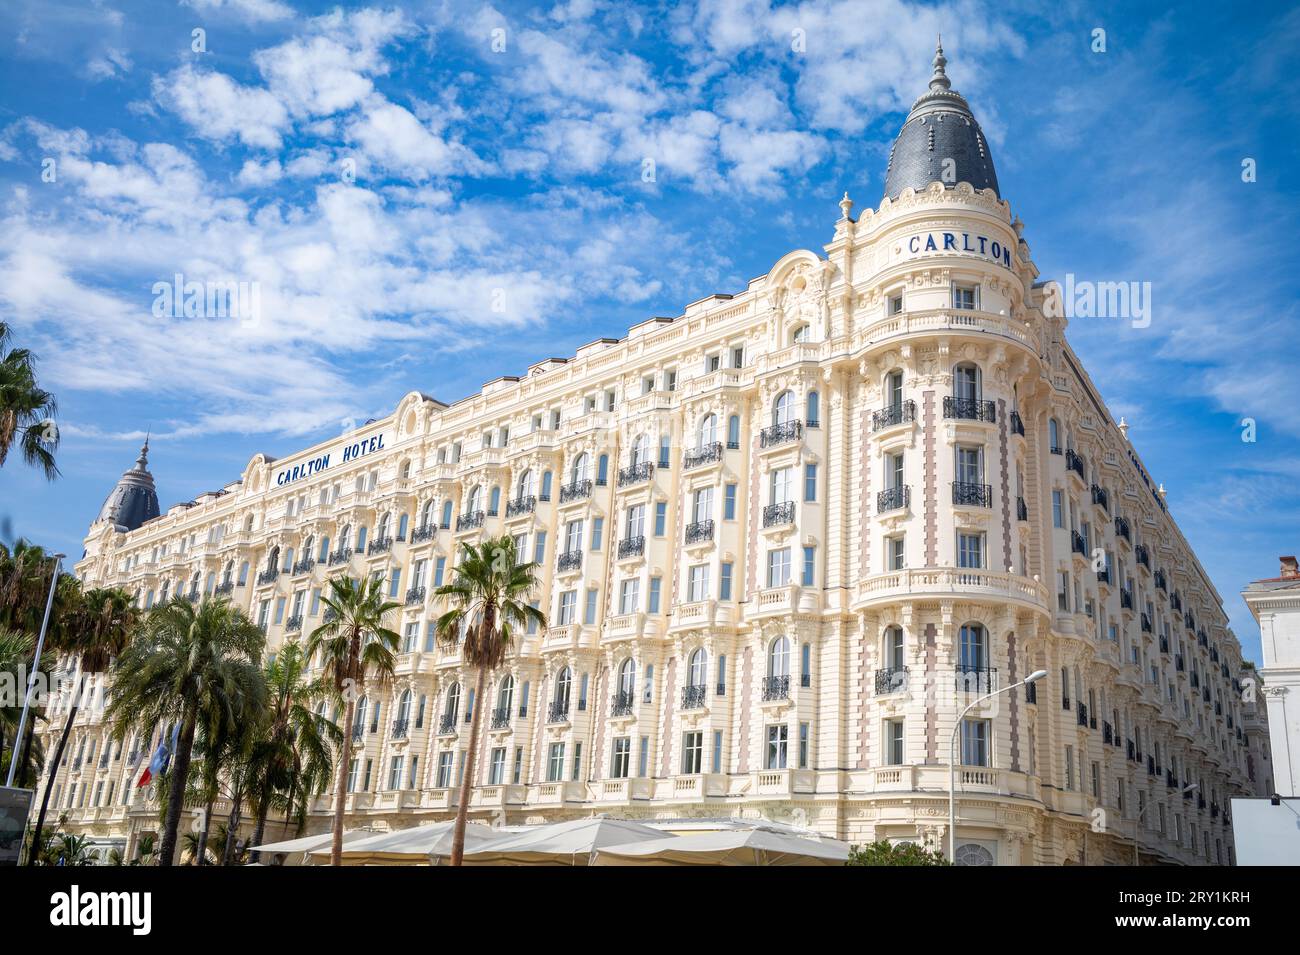 Das luxuriöse Carlton Hotel liegt am Boulevard de la Croisette, direkt gegenüber dem Mittelmeer, in Cannes, Frankreich. Eines der legendärsten Stockfoto